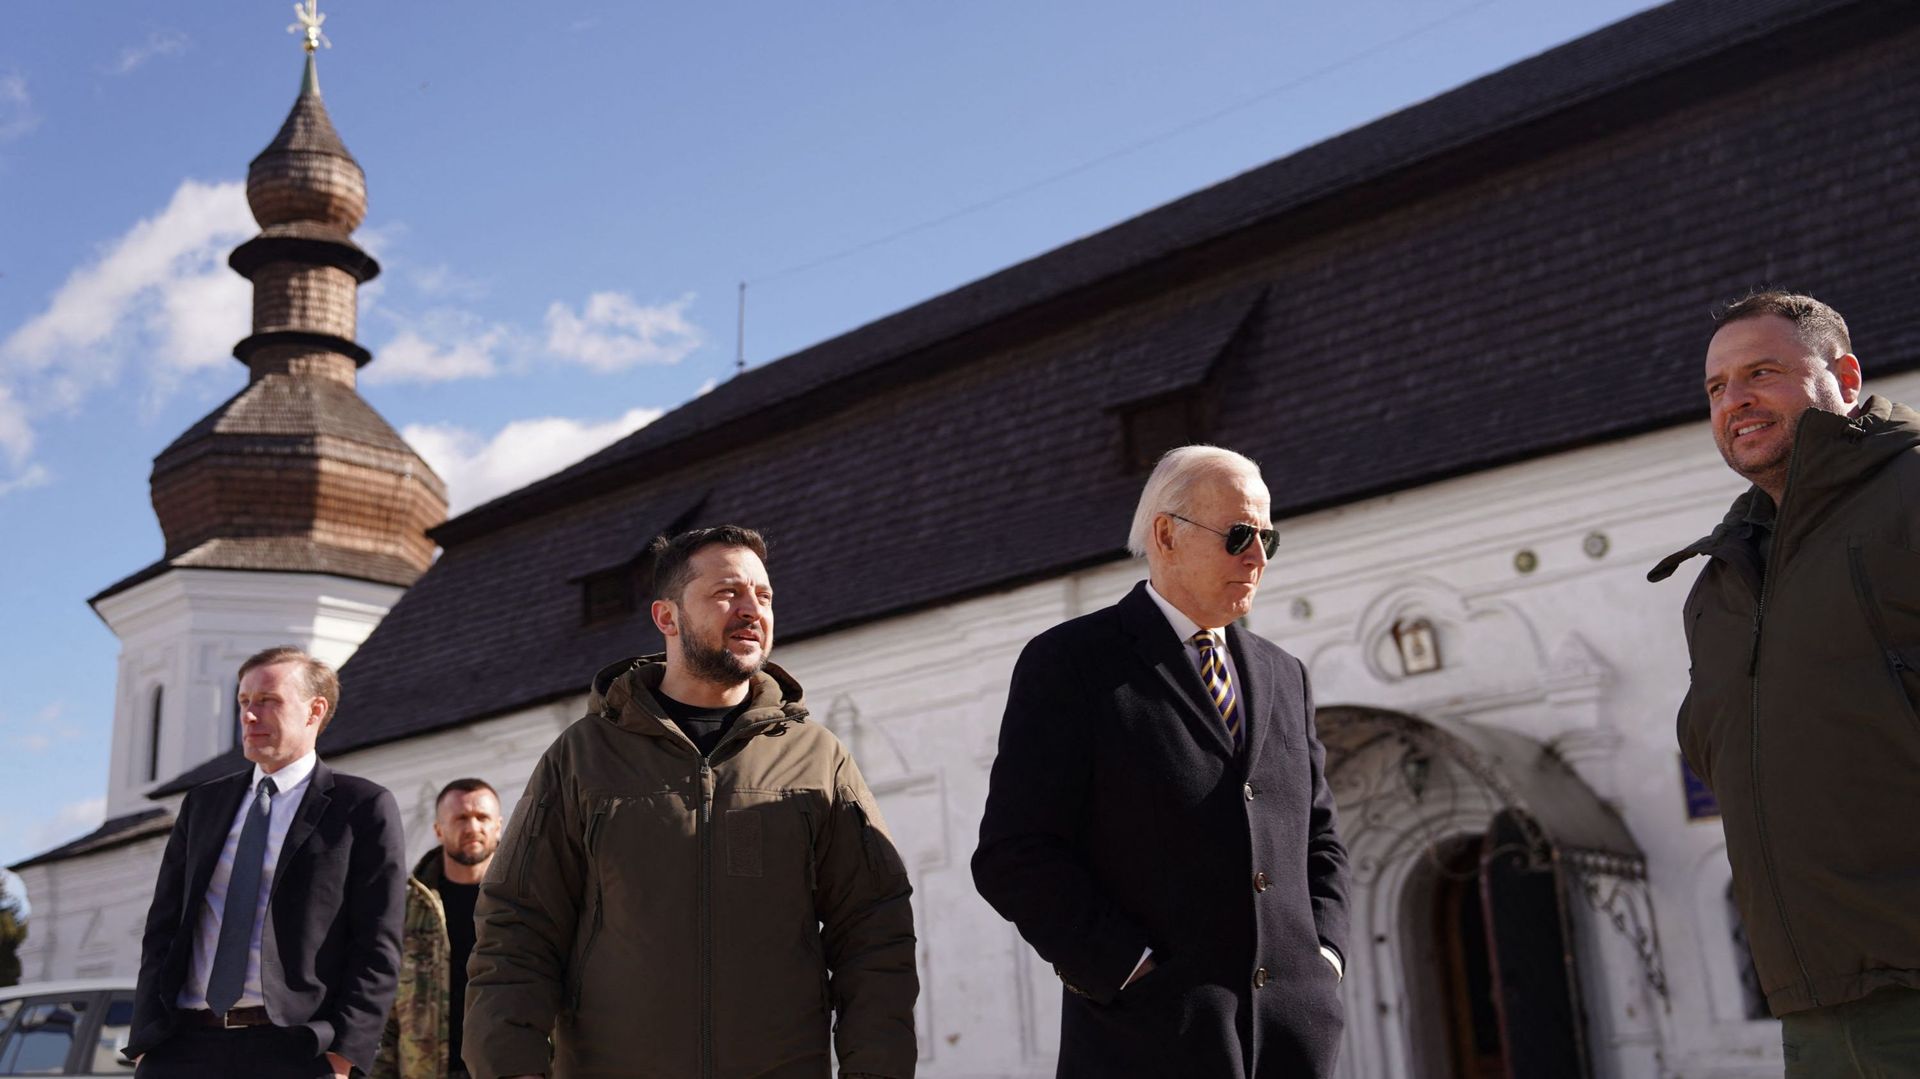 Le président américain Joe Biden (2e à droite) marche à côté du président ukrainien Volodymyr Zelensky (3e à gauche) lors de son arrivée pour une visite à Kiev, le 20 février 2023.